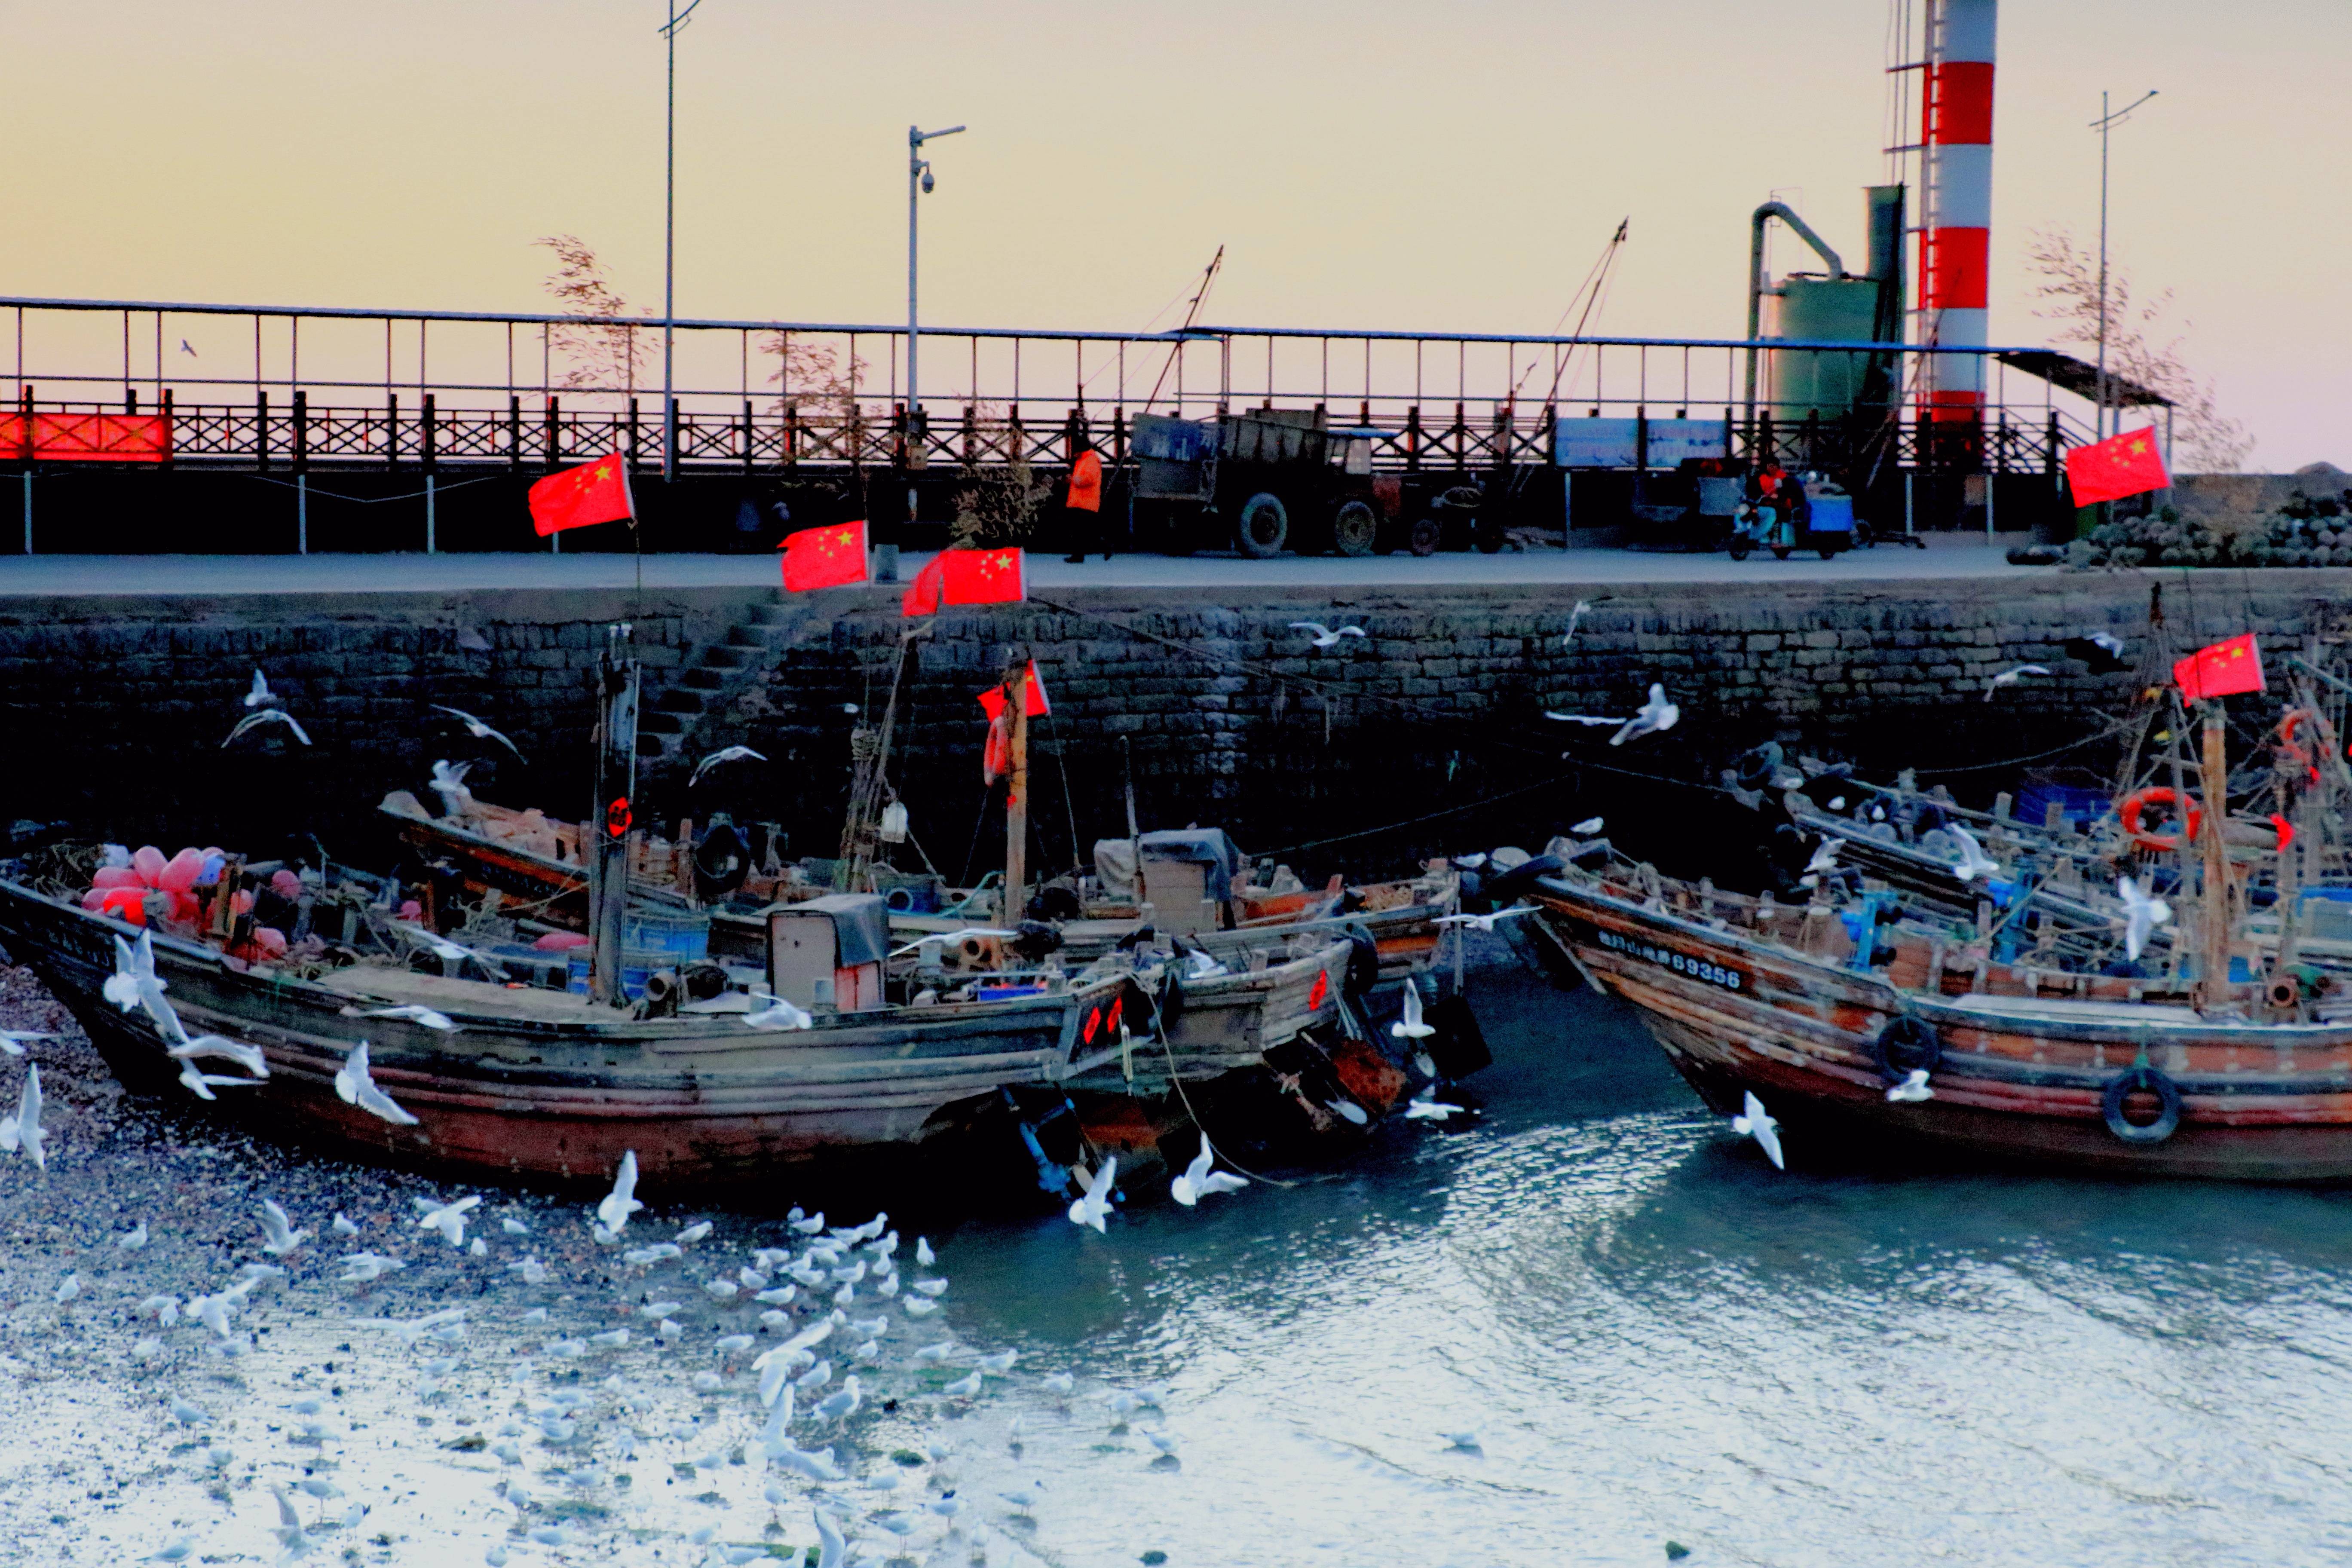 原创黄海之滨的日出海鸥翩飞渔船摇荡这么美的渔港码头一定要来